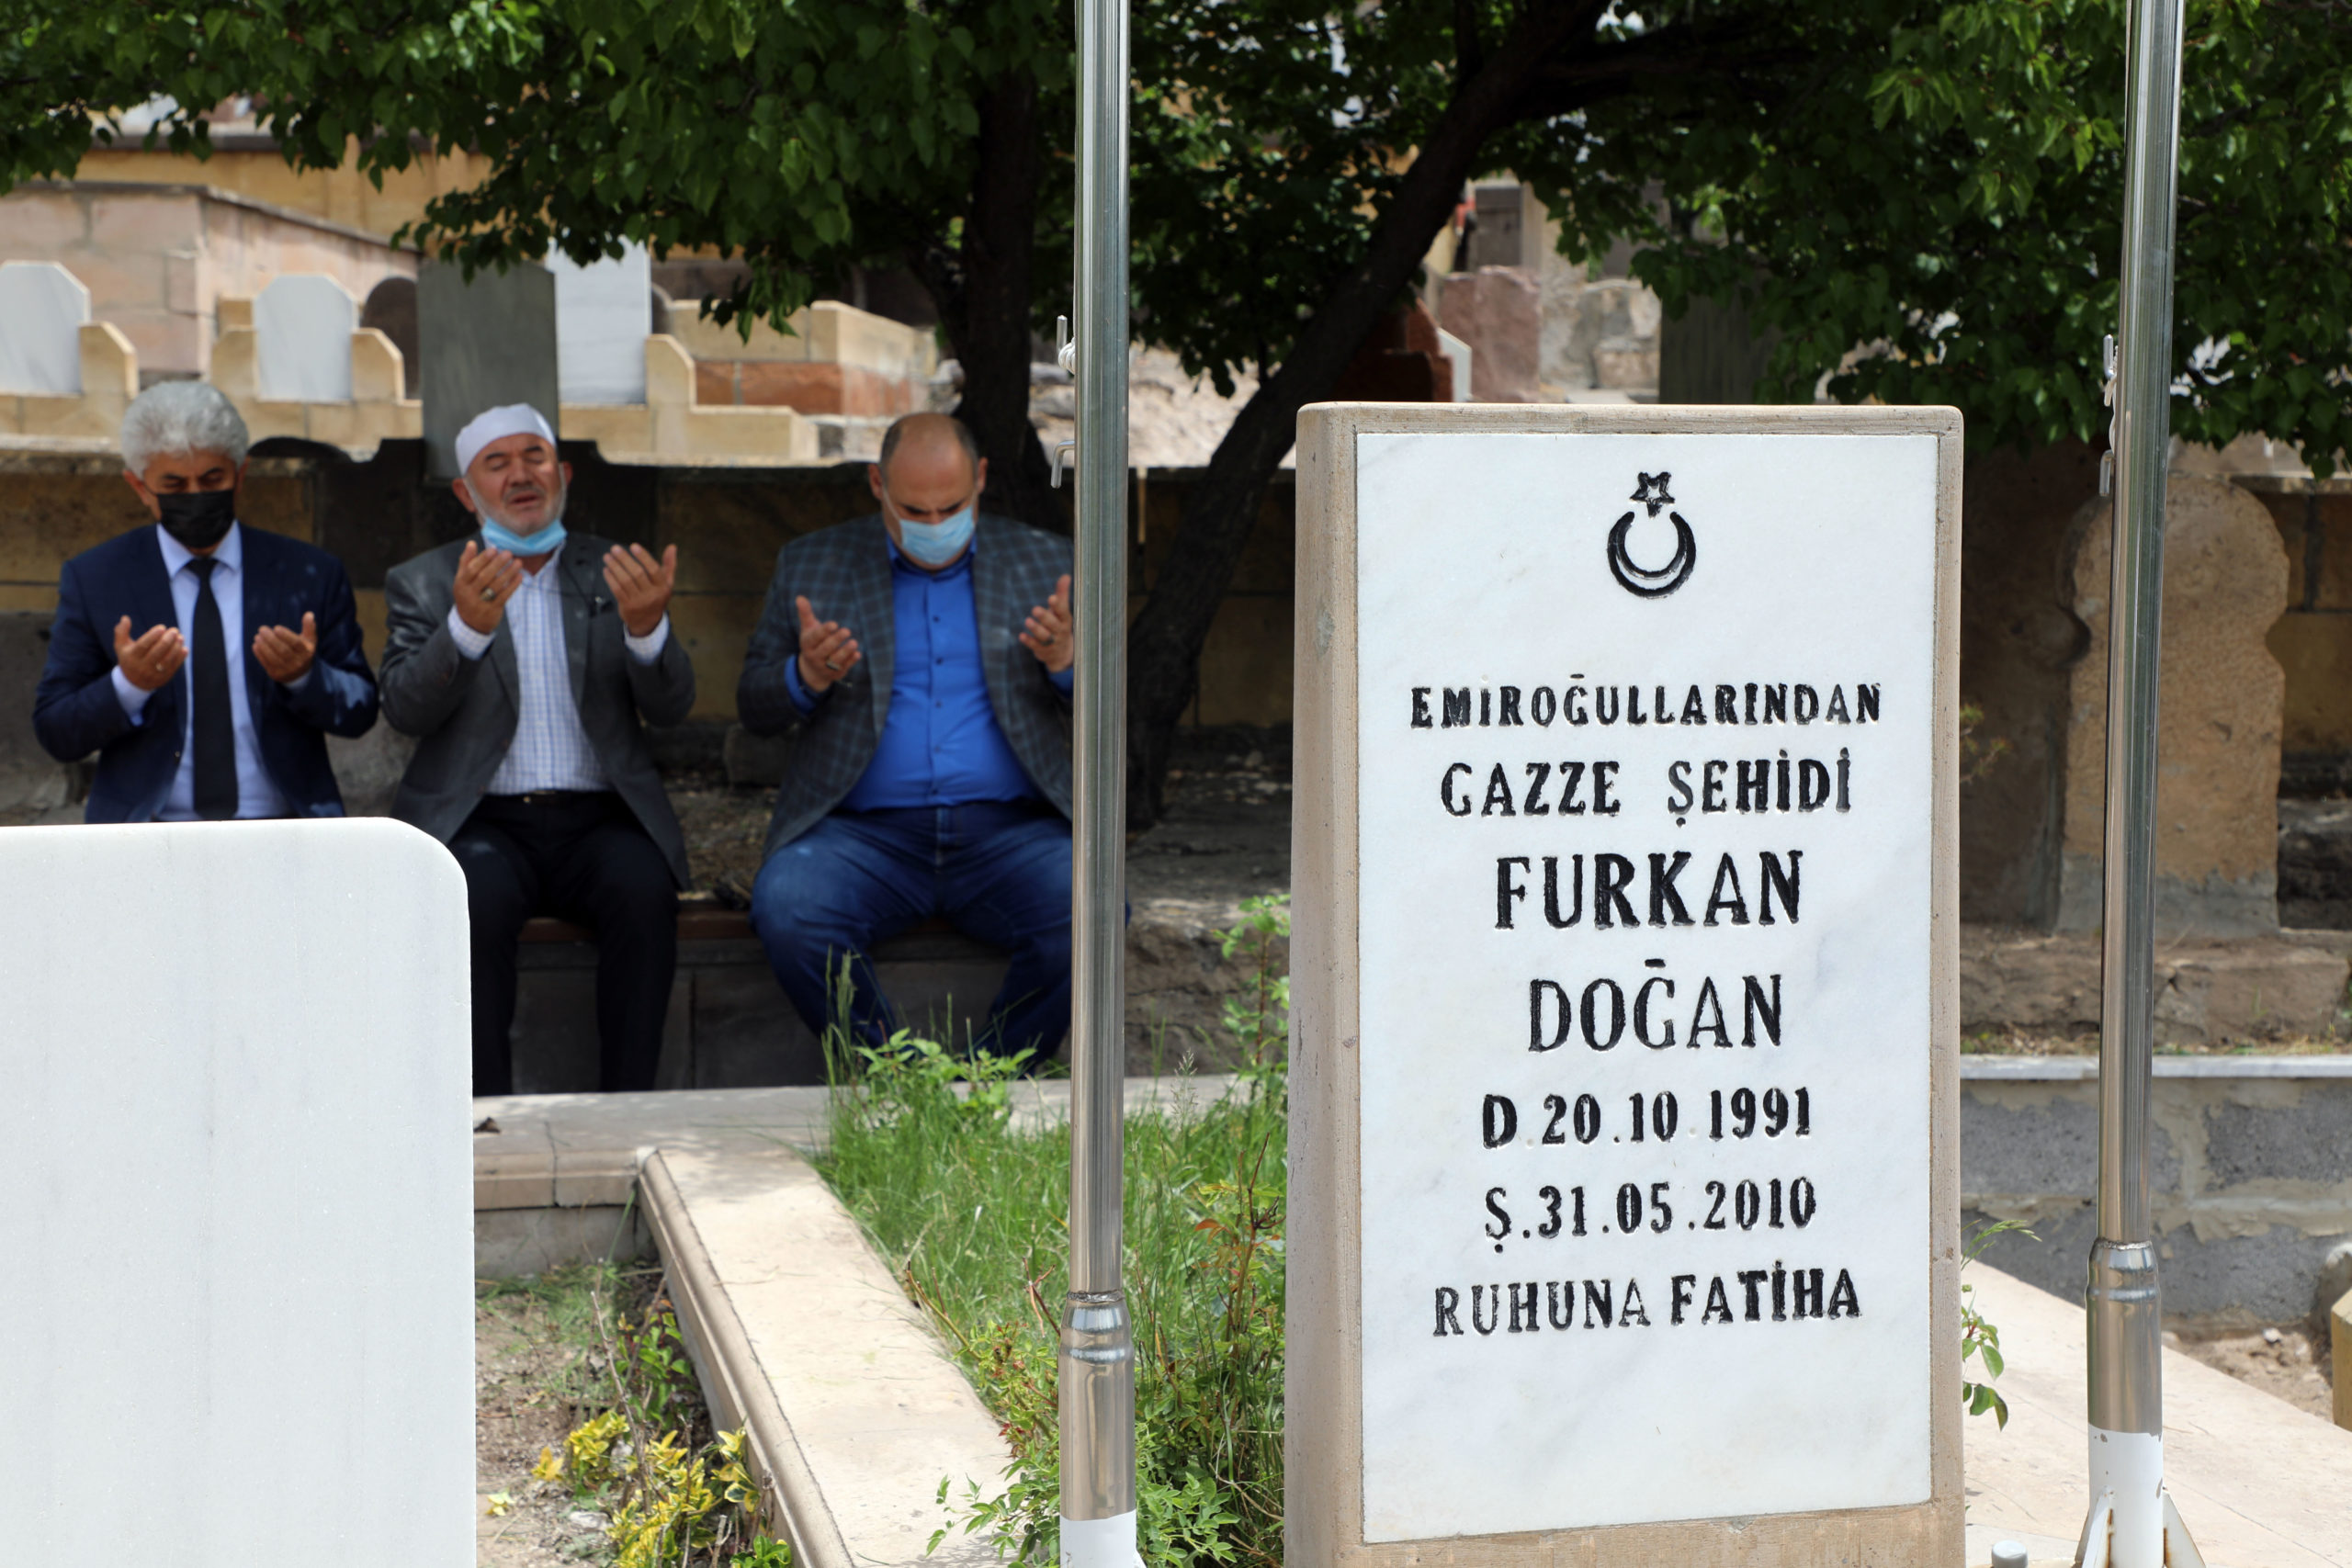  Kayseri Talas’ta Şehit Furkan Doğan’ı Anma Töreni Gerçekleştirildi